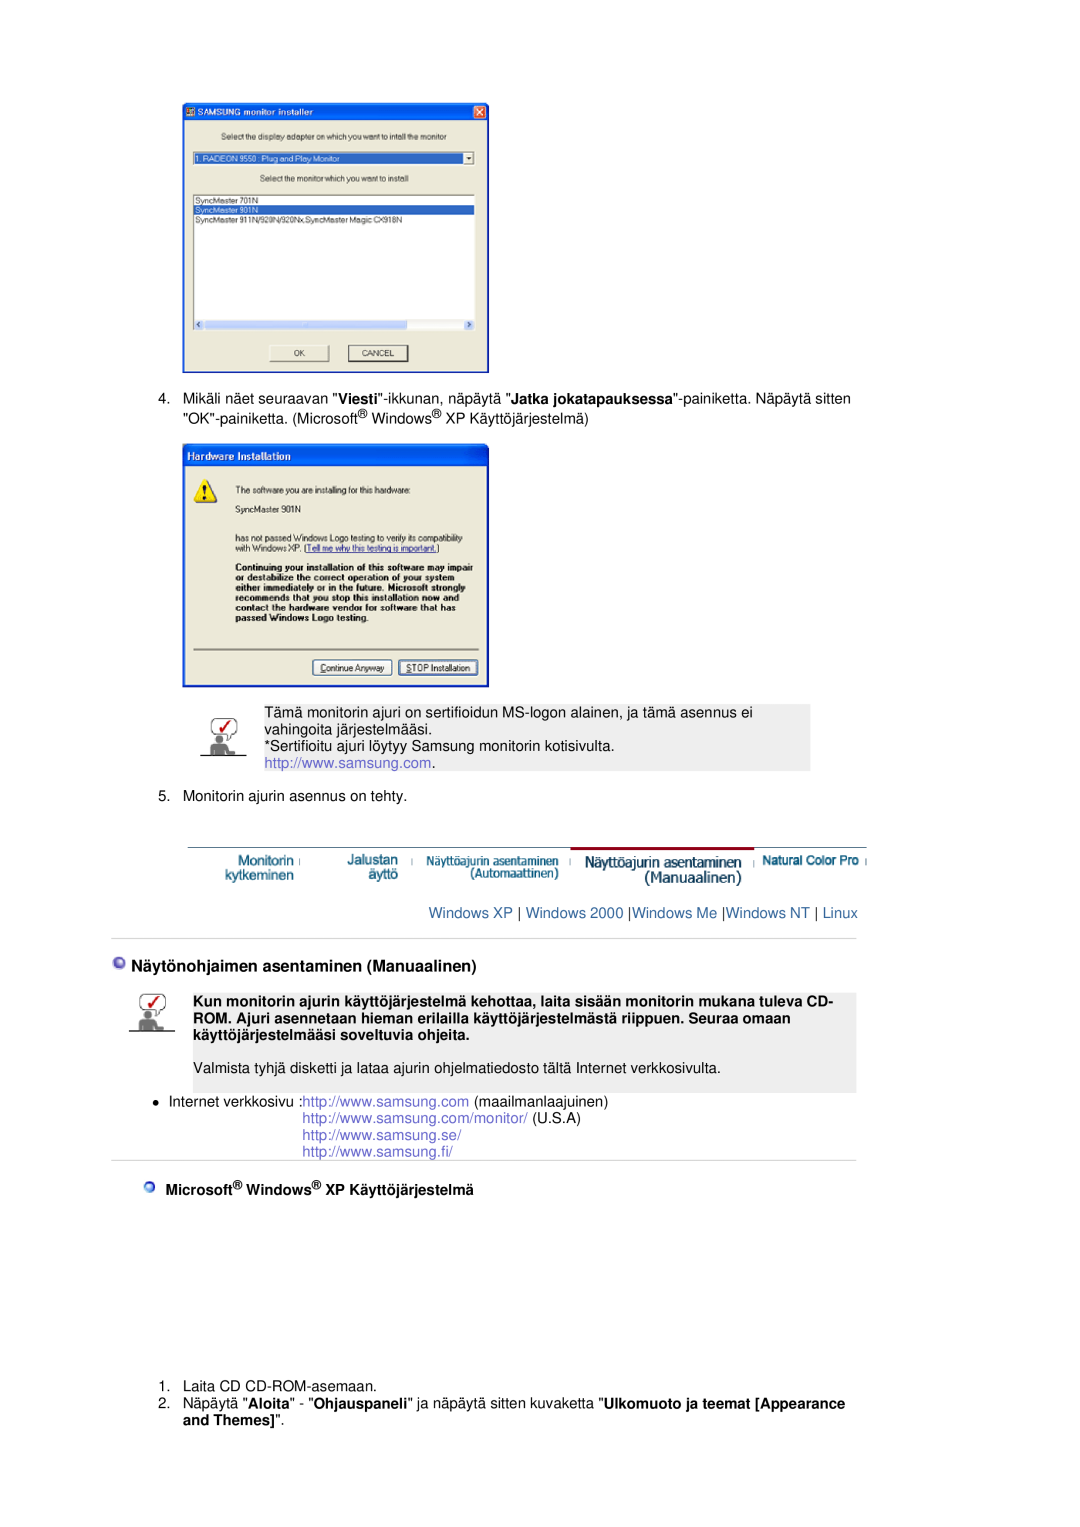 Samsung LS19DOASS/EDC manual Näytönohjaimen asentaminen Manuaalinen, Windows XP Windows 2000 Windows Me Windows NT Linux 